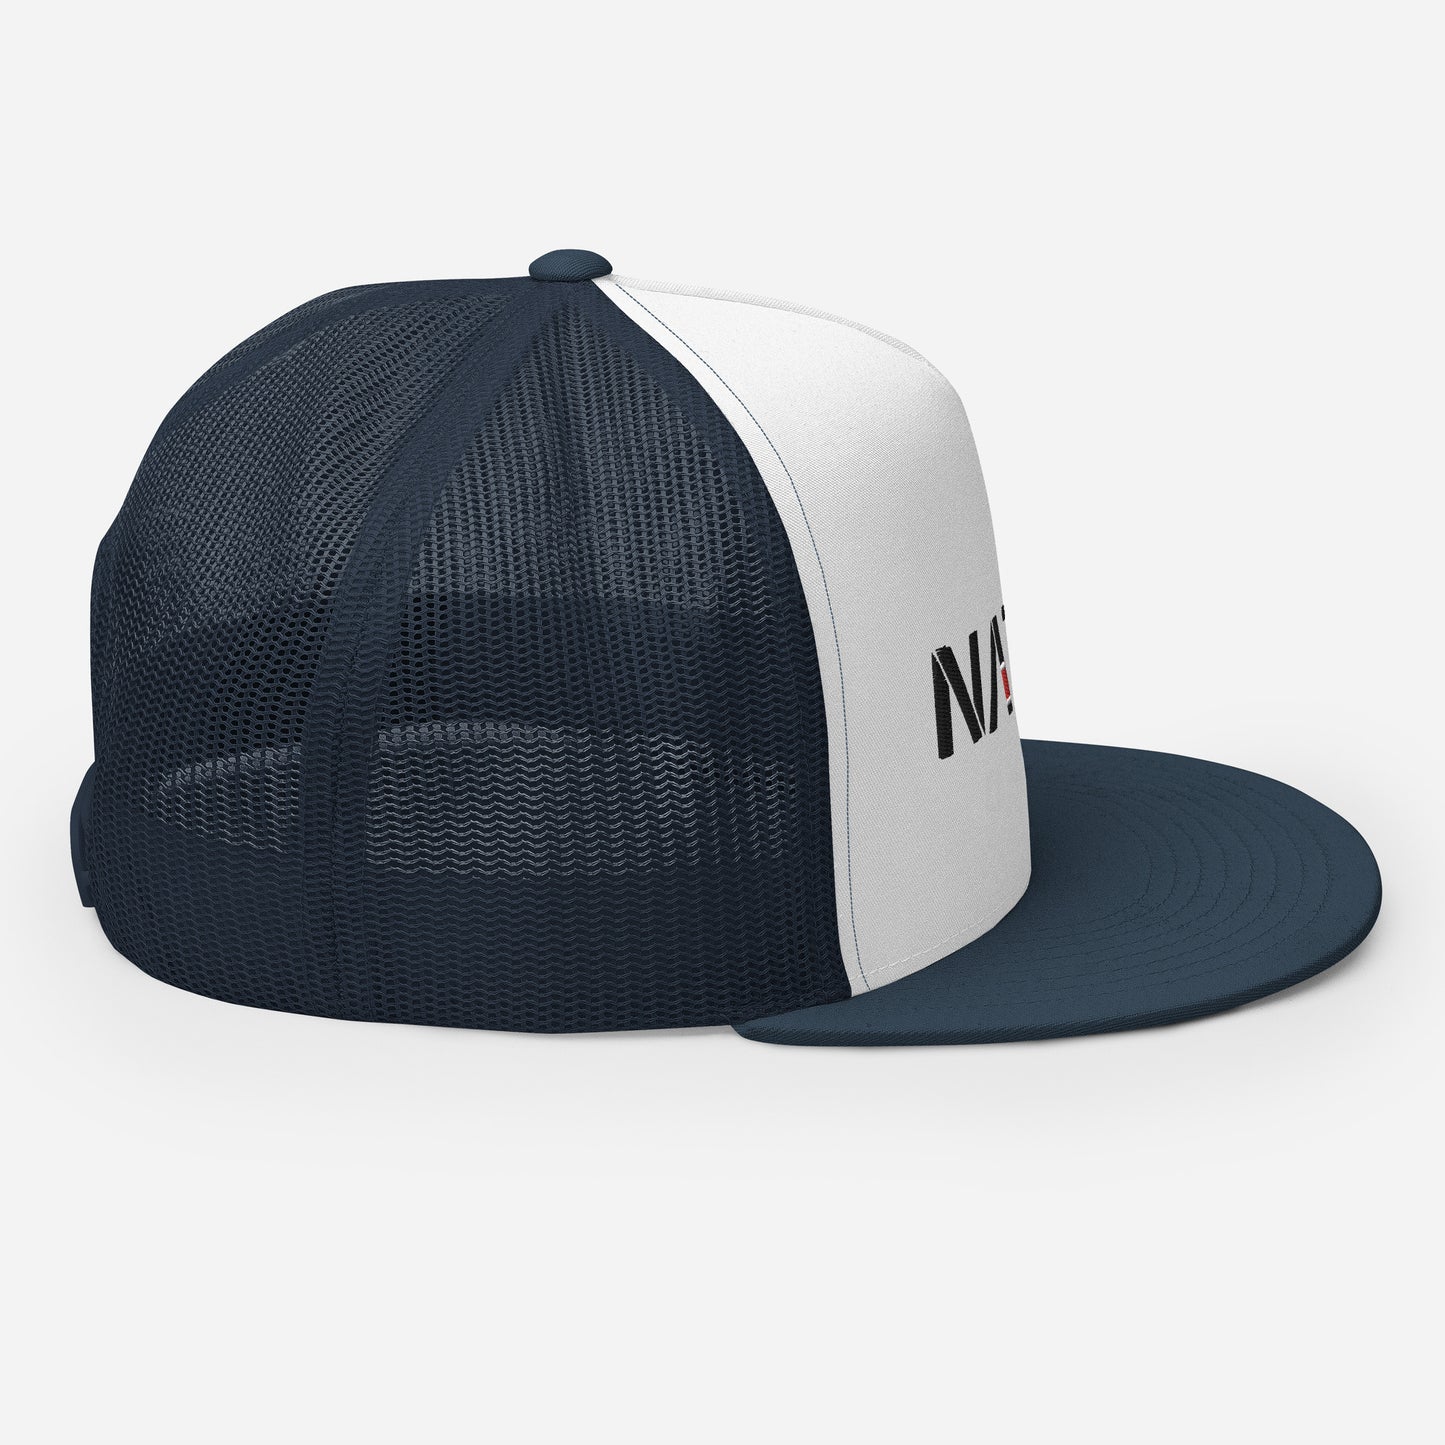 NATTY. Logo Trucker Hat